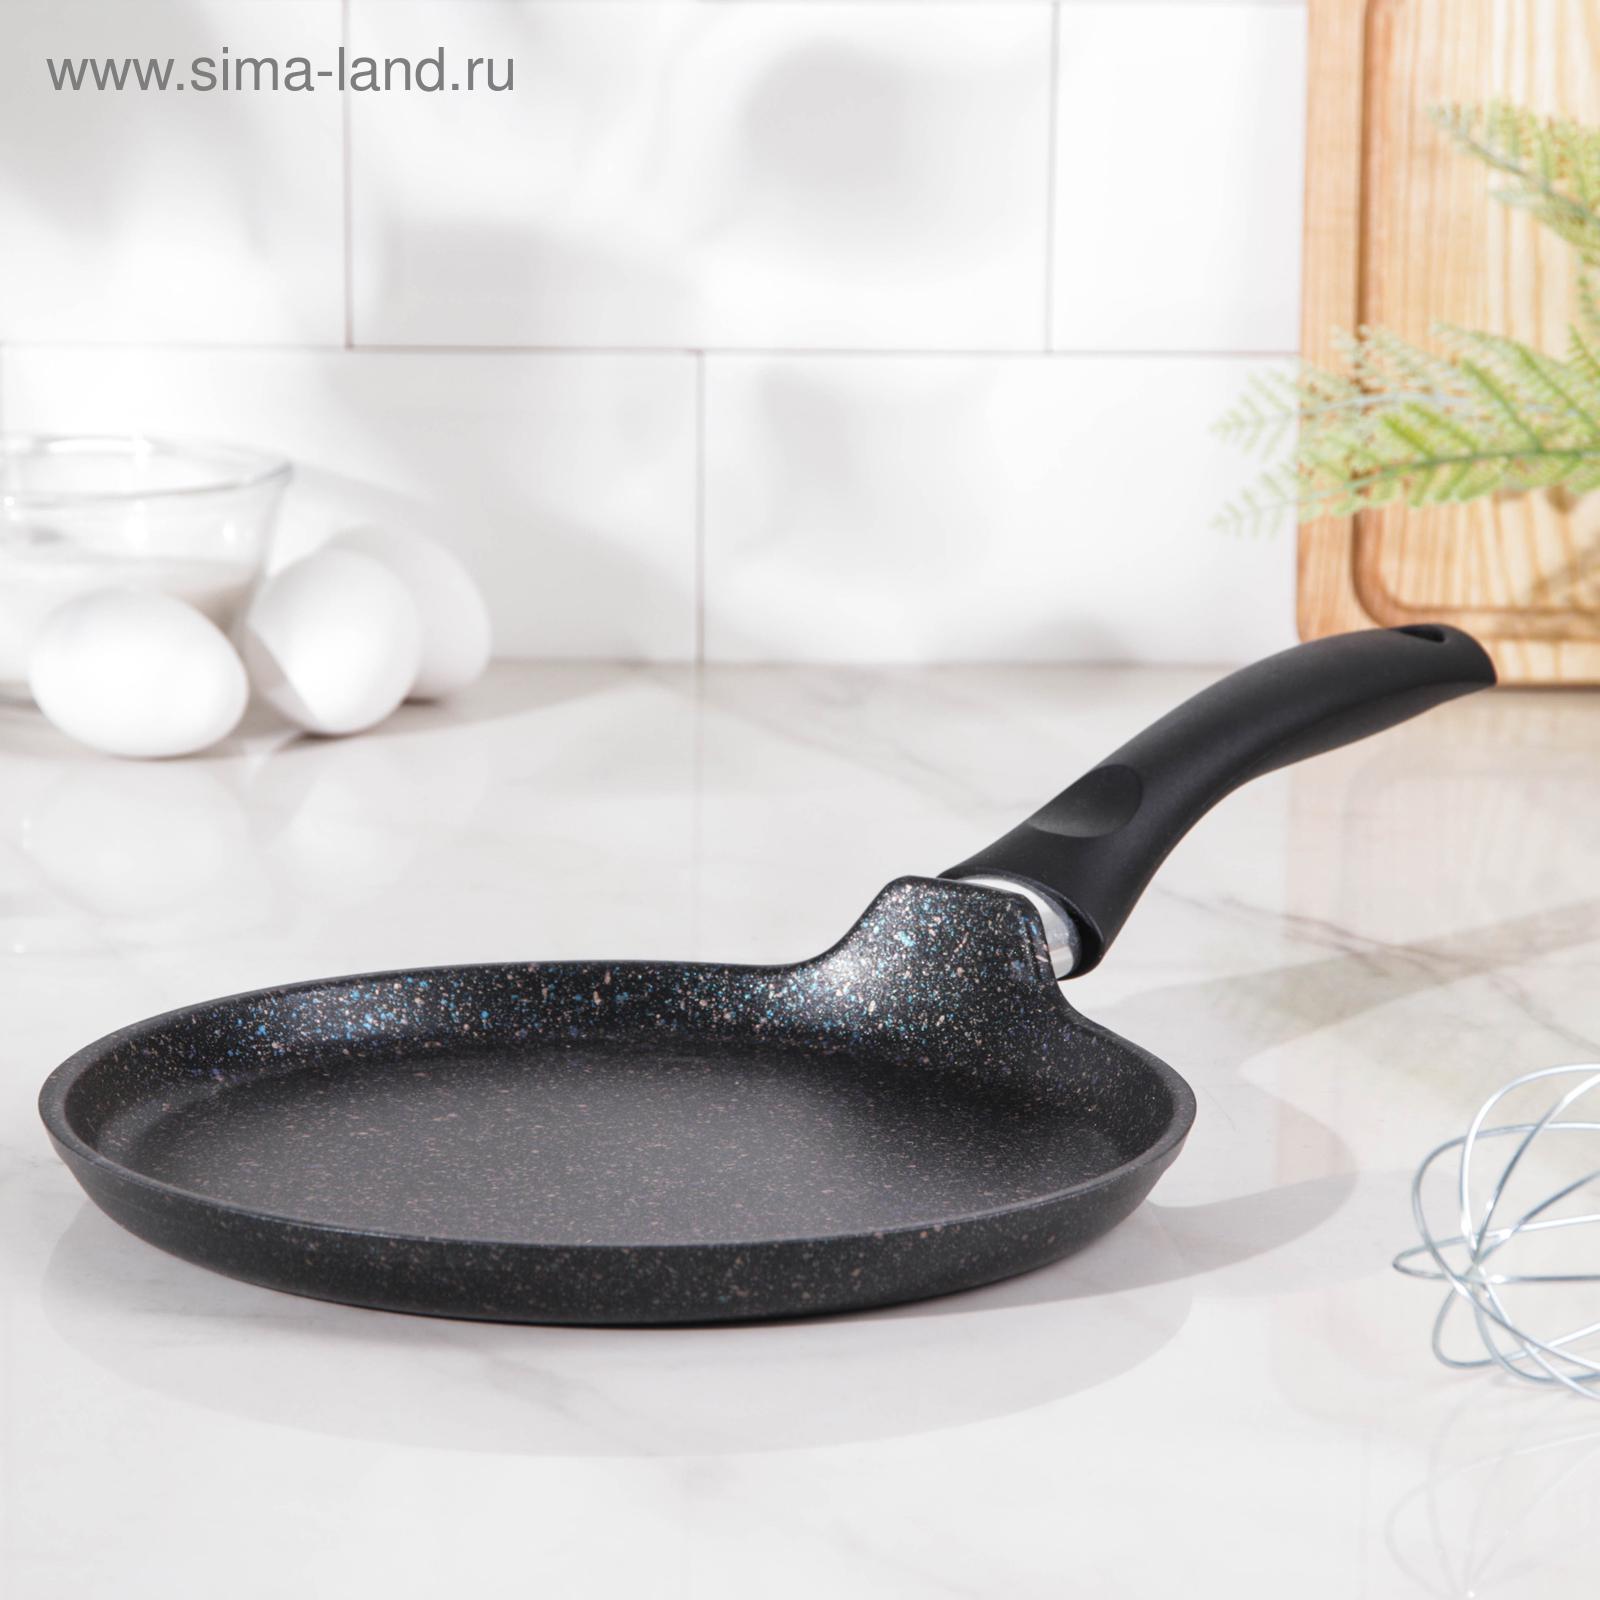 Сковорода блинная d=22см KUKMARA Granit ultra biue(черный)